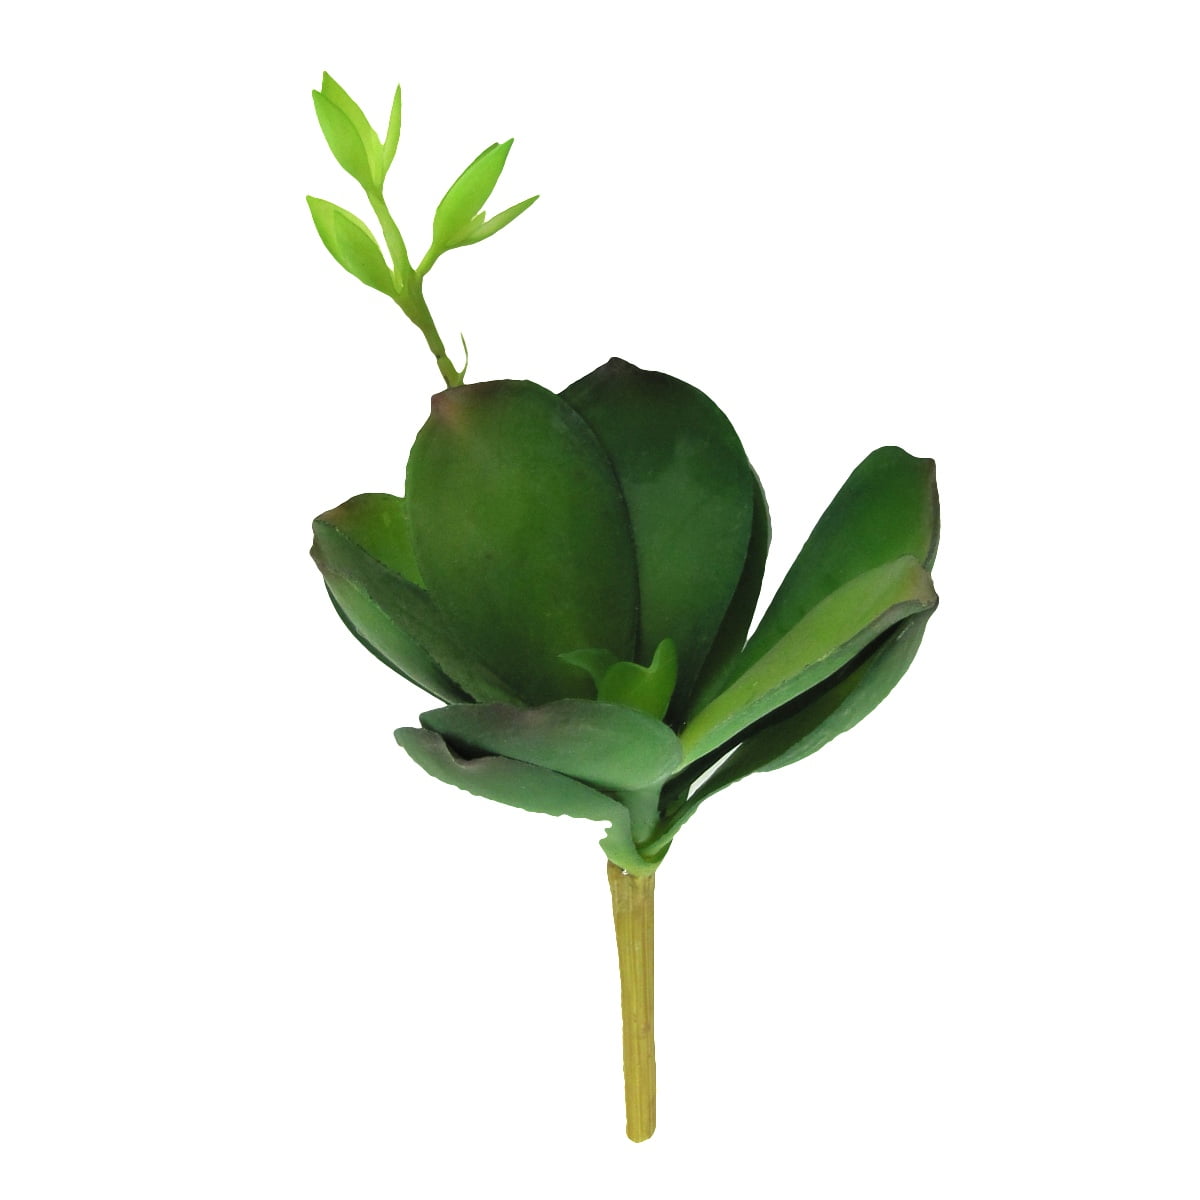 Artificial Lotus Flower Succulent Grass Desert Plant Arrangement Decor Green